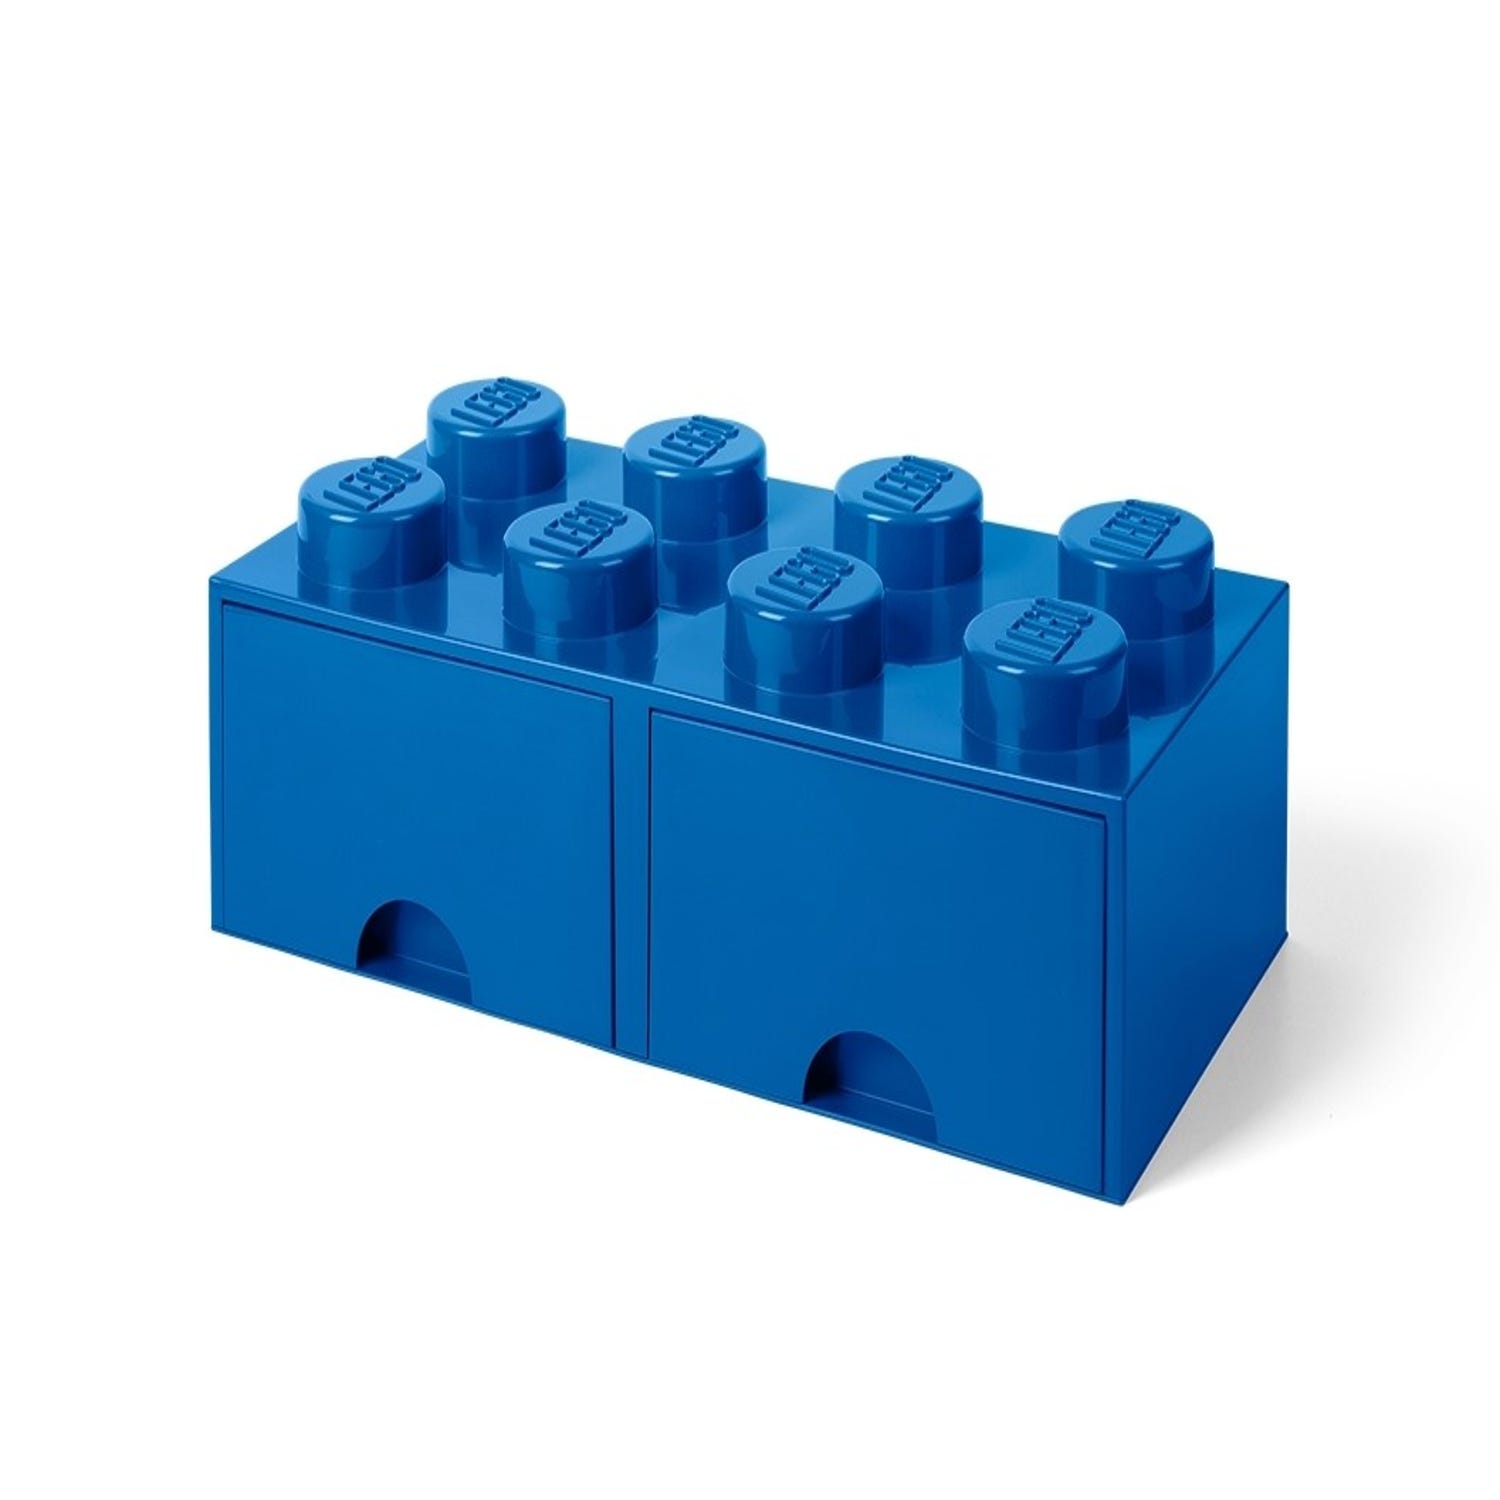 Op en neer gaan Volg ons Vaarwel LEGO® 8-stud Bright Blue Storage Brick Drawer 5005399 | Other | Buy online  at the Official LEGO® Shop US